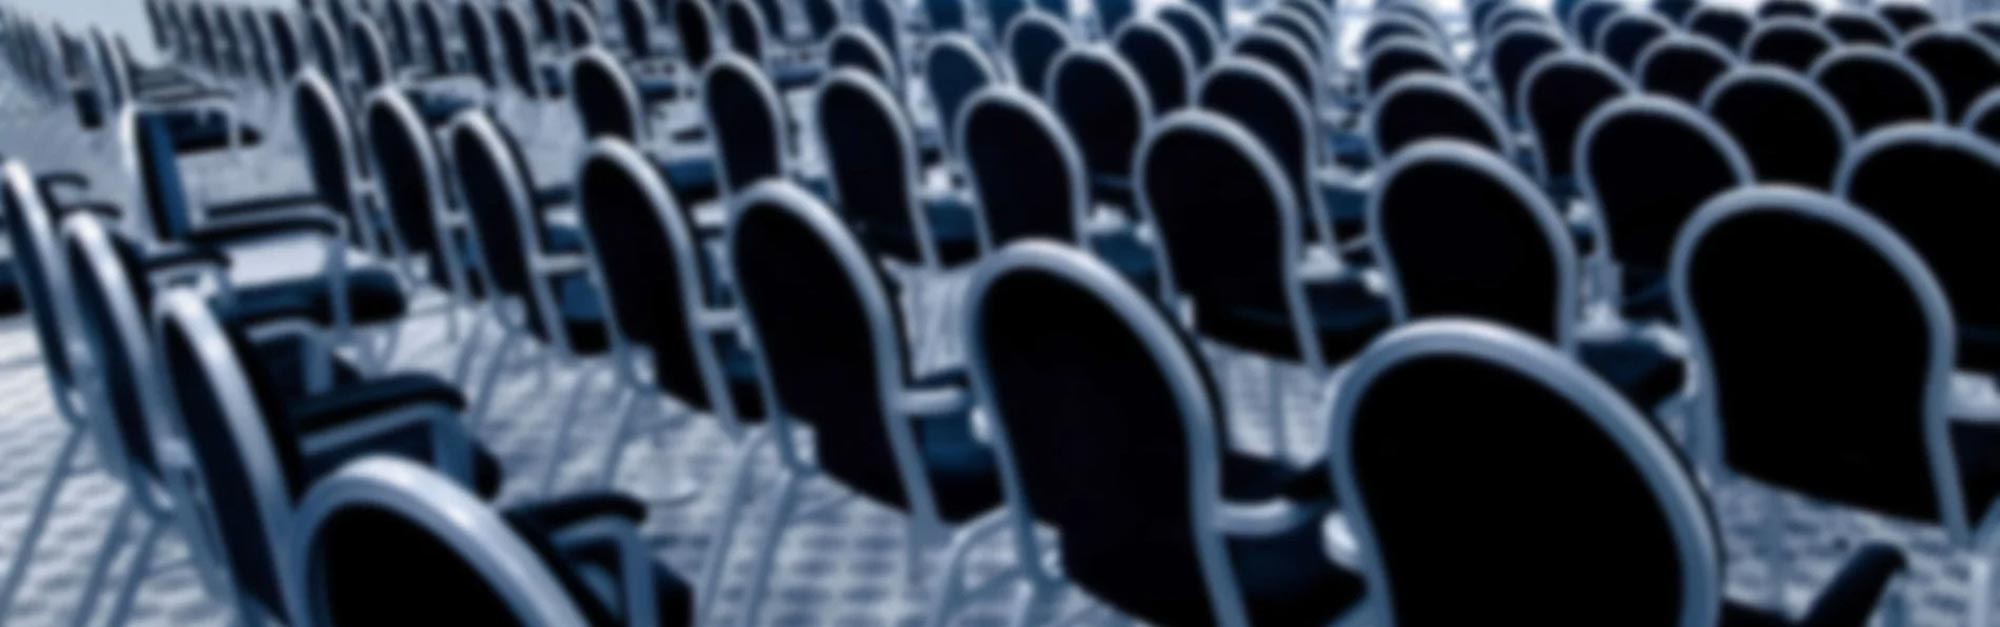 Konferens i Halmstad där stolar är uppställda på rad